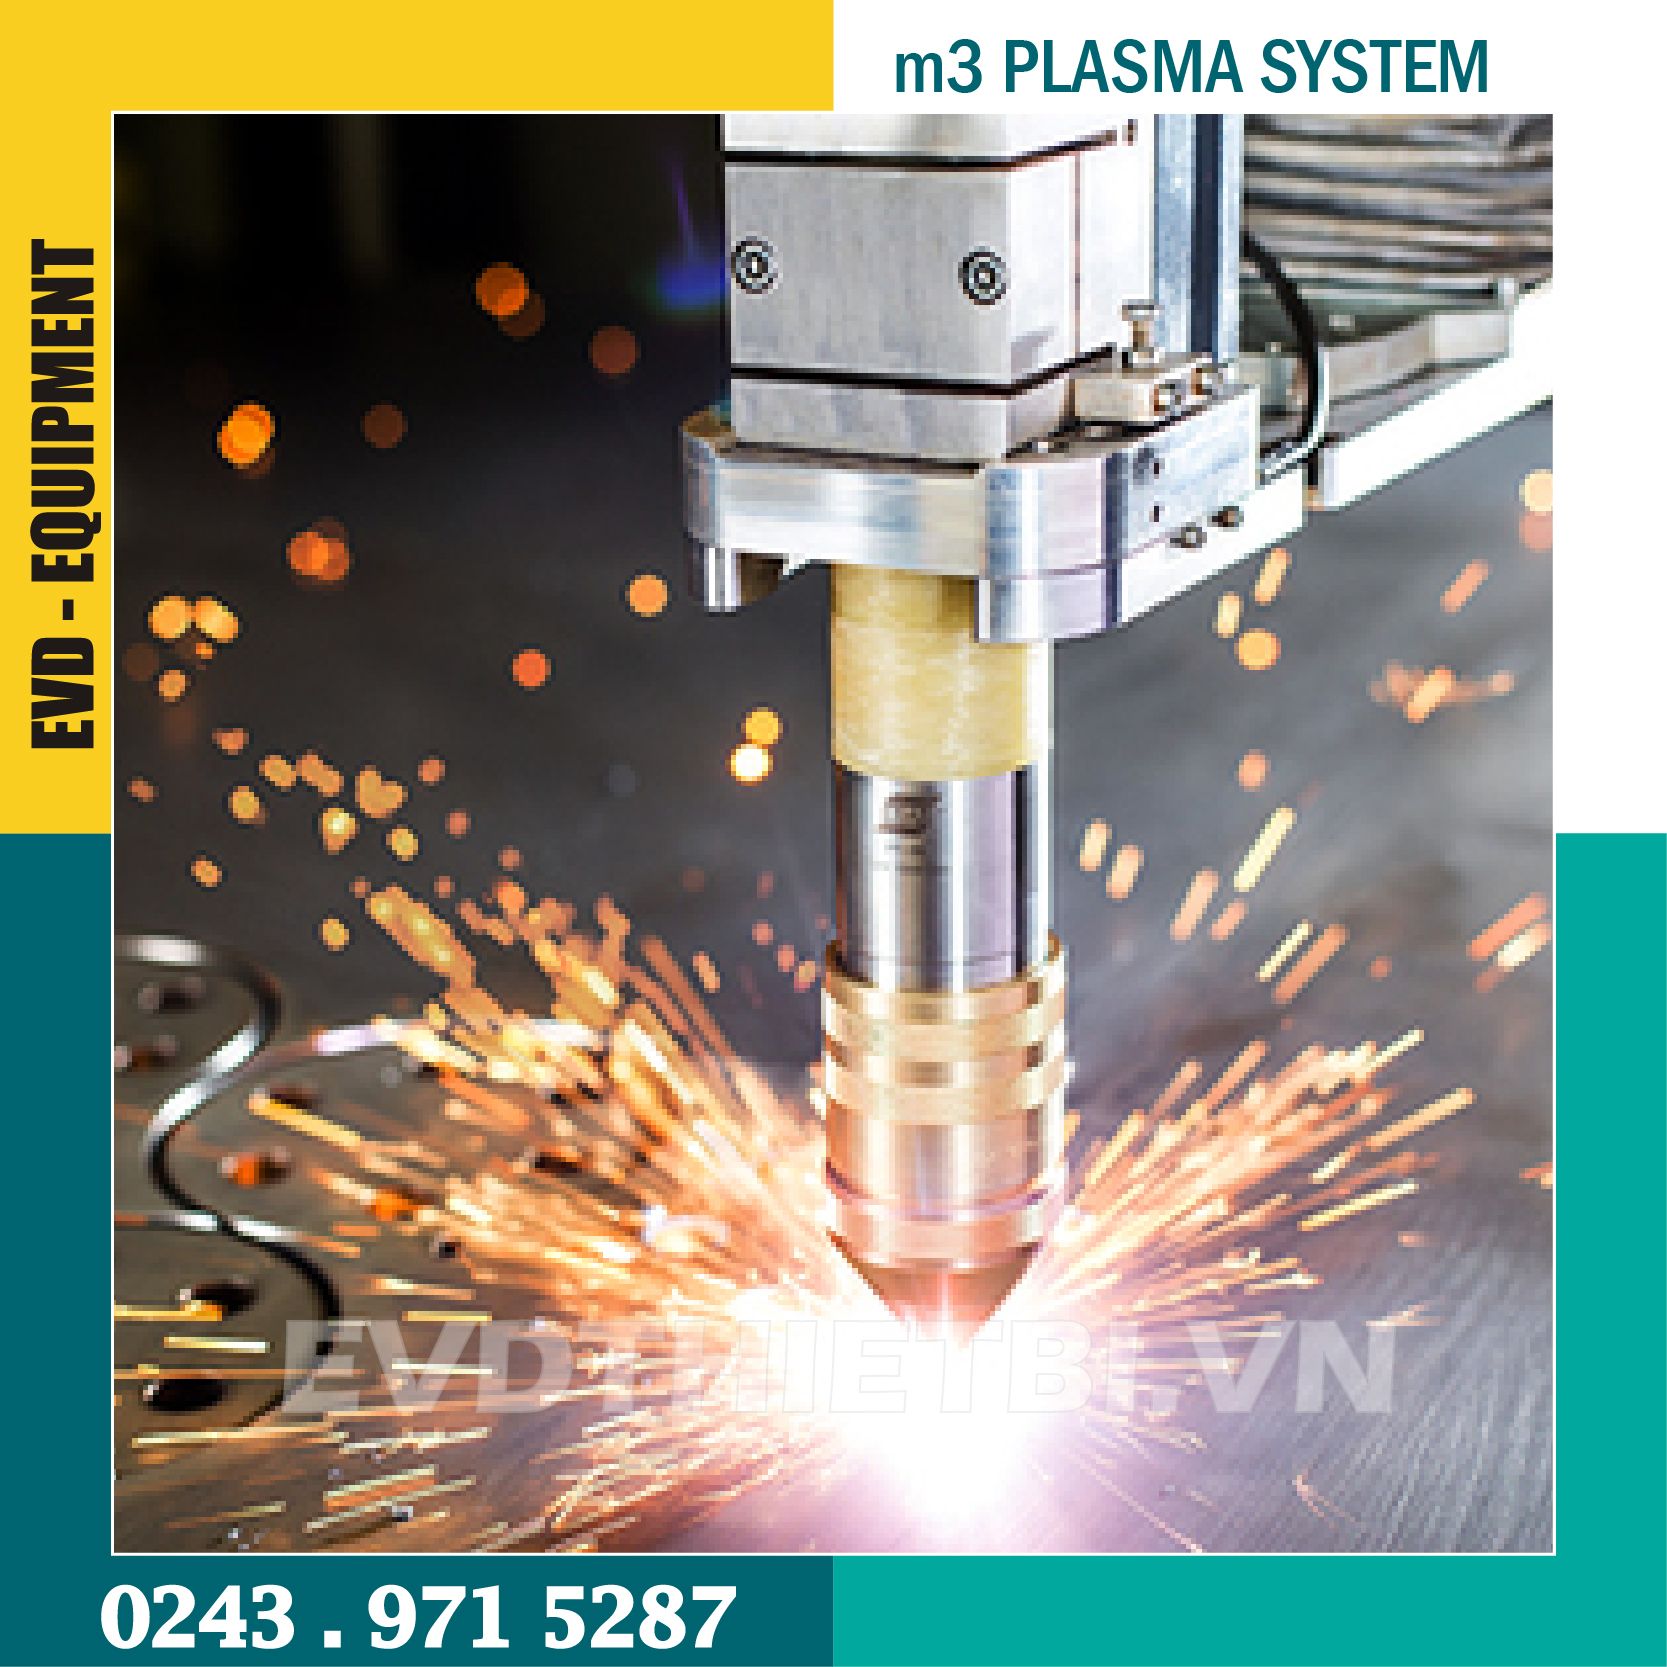 HỆ THỐNG PLASMA ESAB M3 Plasma System